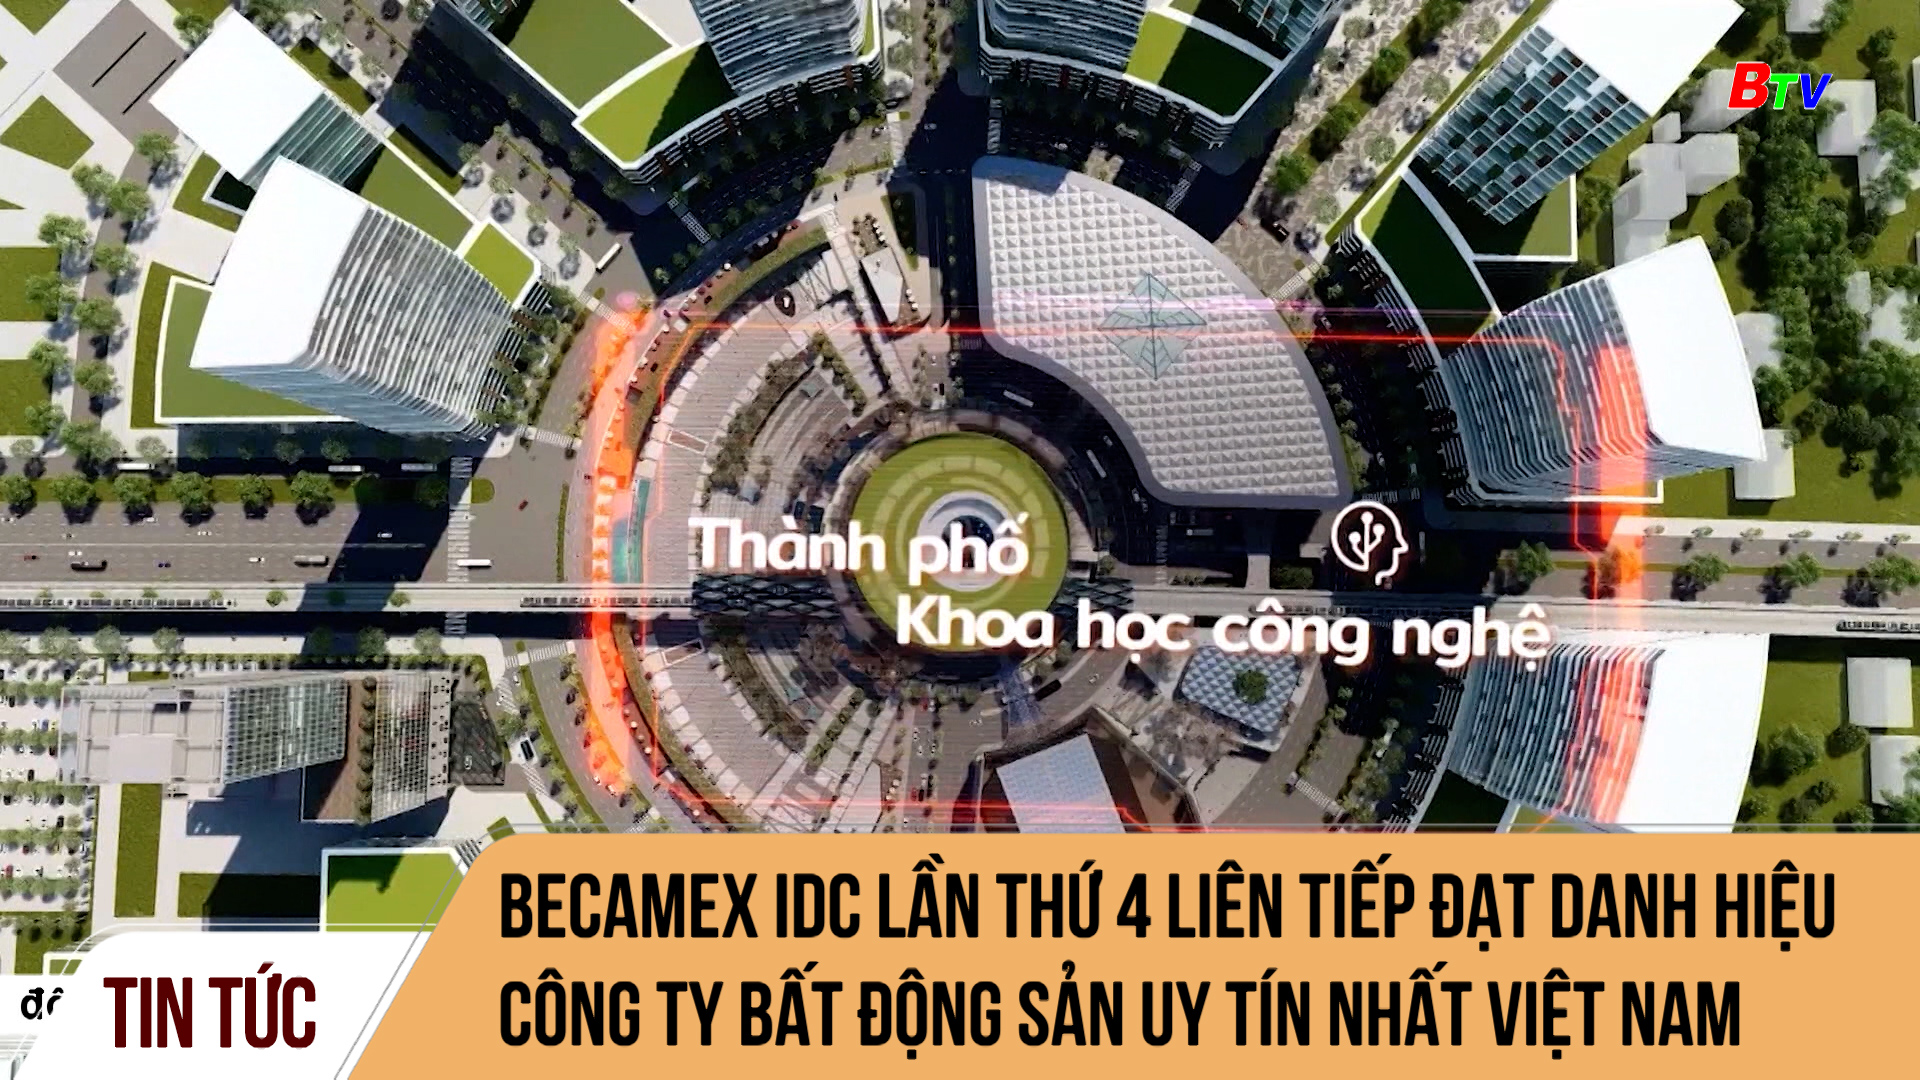 Becamex IDC lần thứ 4 liên tiếp đạt danh hiệu Công ty bất động sản uy tín nhất Việt Nam